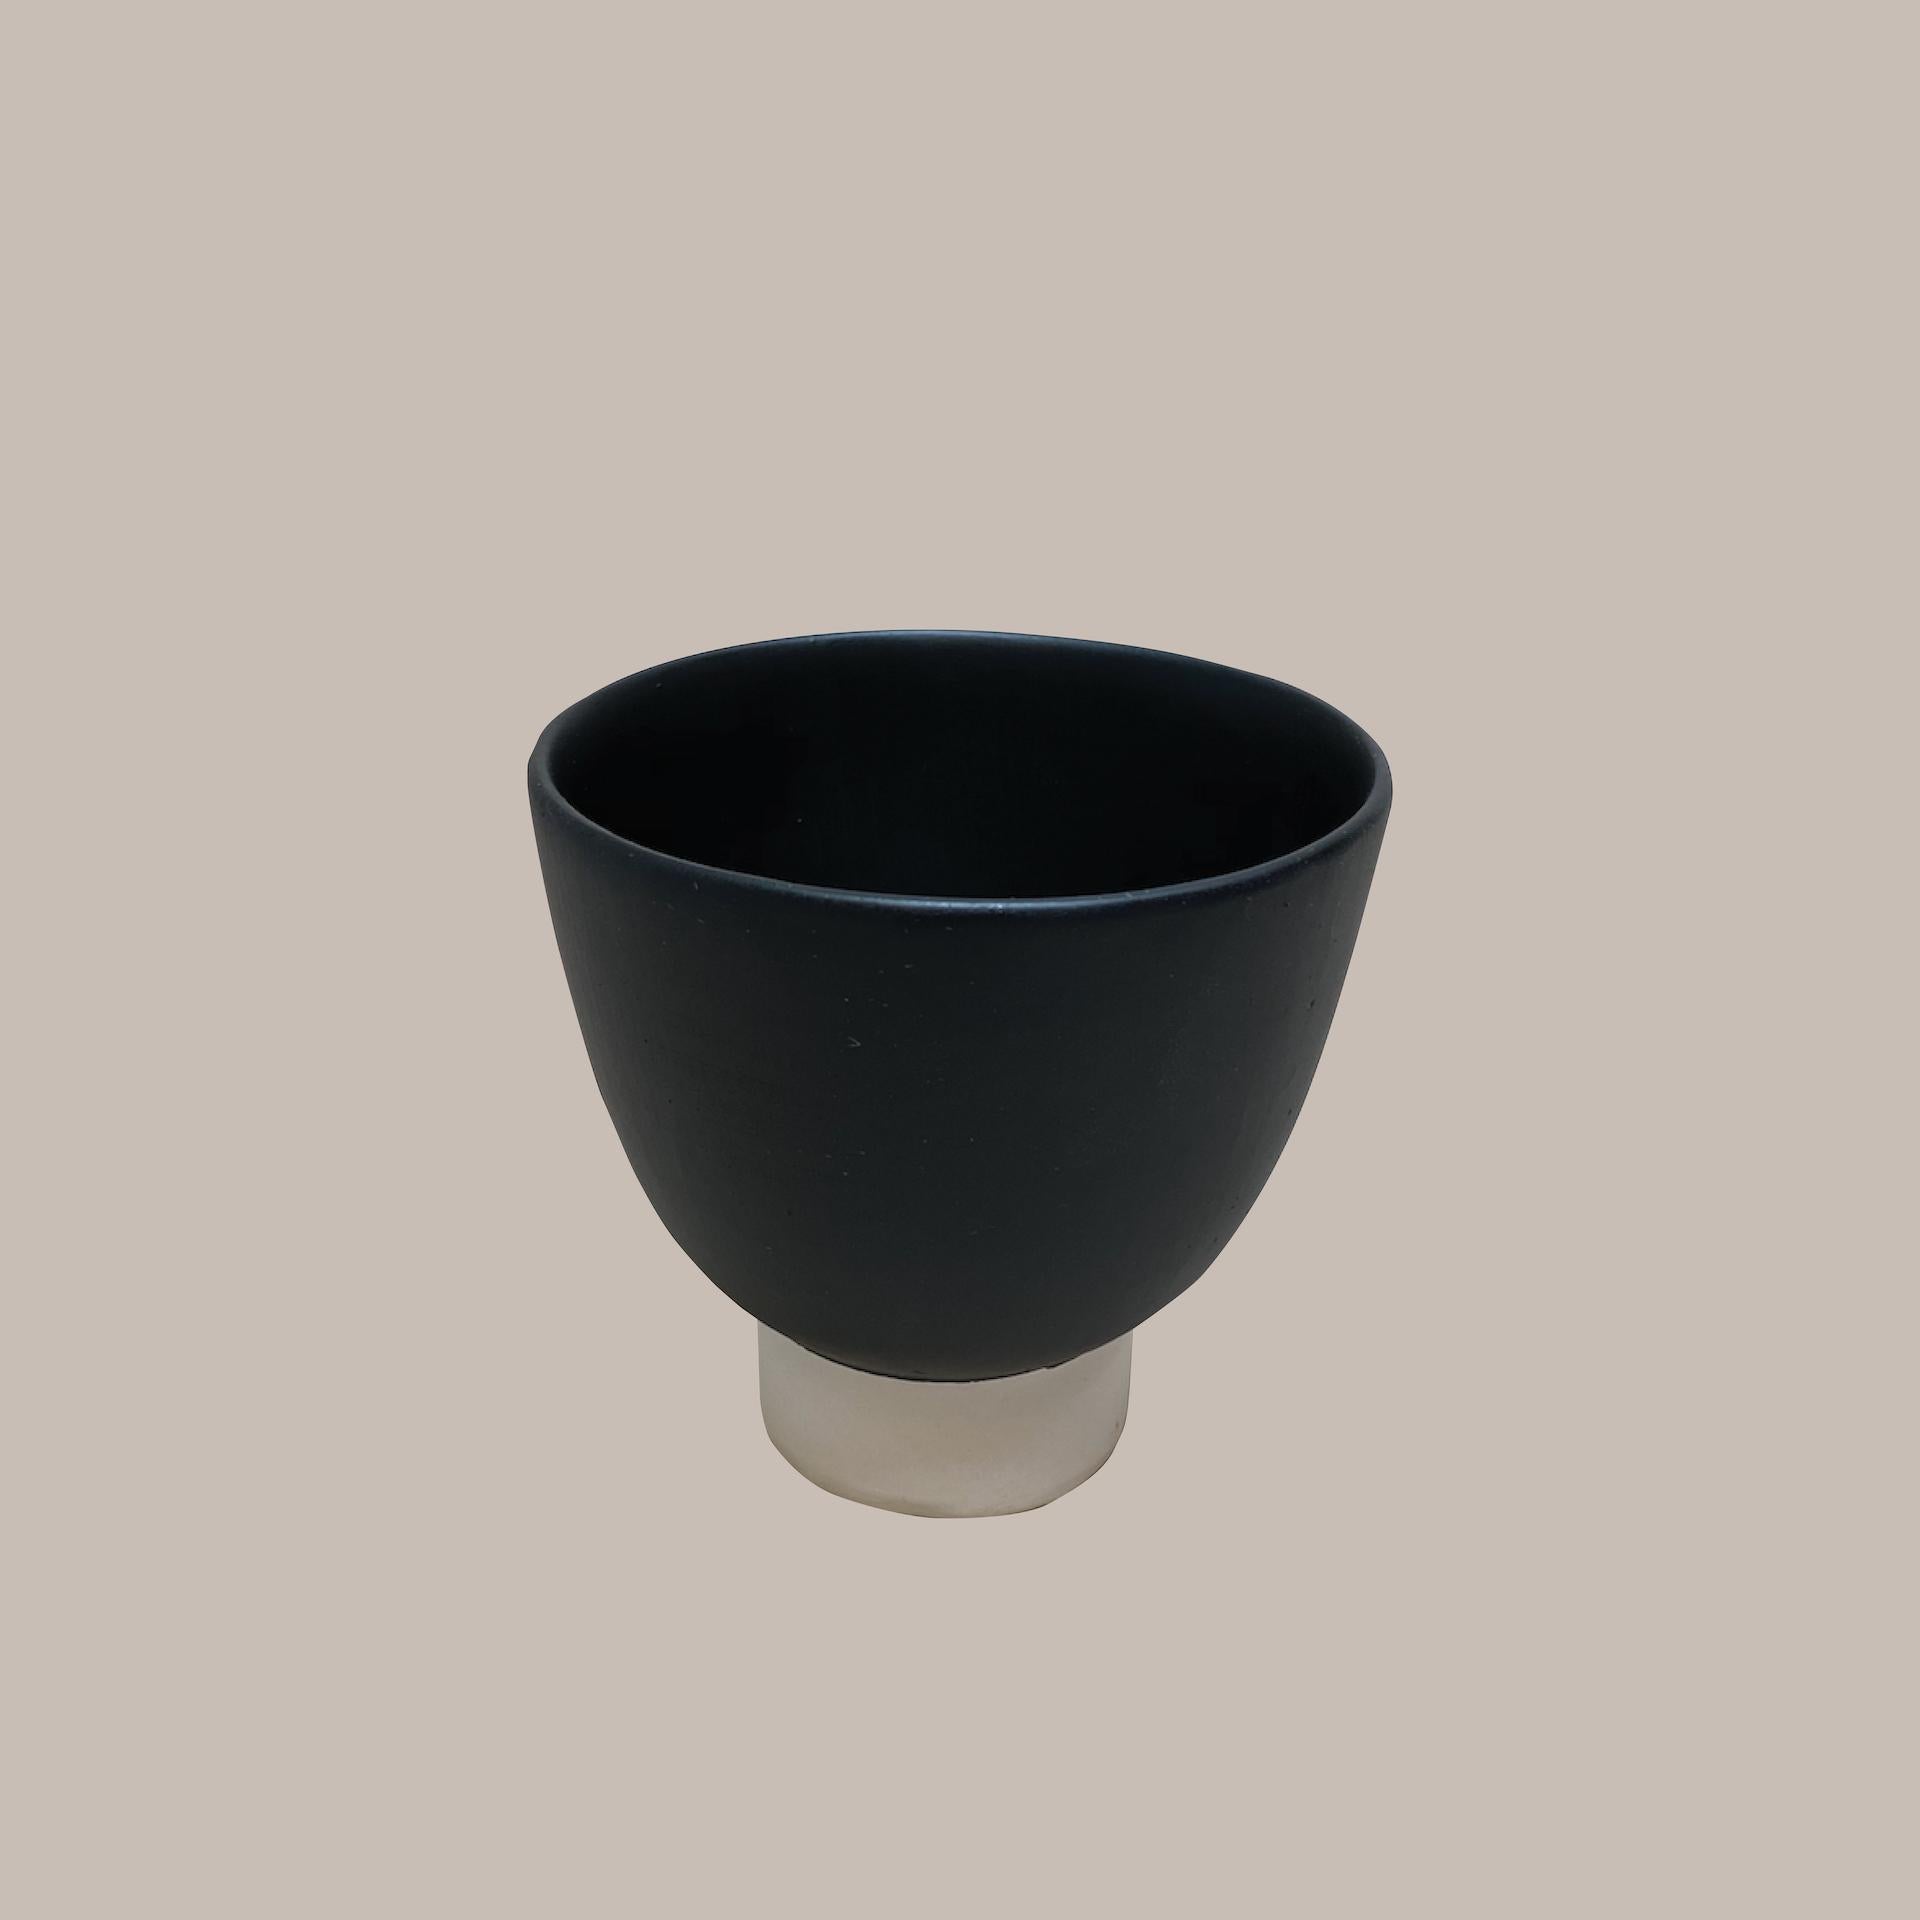 Ott une autre tasse paradigmatique en céramique faite à la main par le Studio Yoon Seok-hyeon
Dimensions : L 10 x H 9 cm
MATERIAL : Ott (résine naturelle de l'arbre Ott), porcelaine
250g

Il est possible de personnaliser différentes couleurs dans la